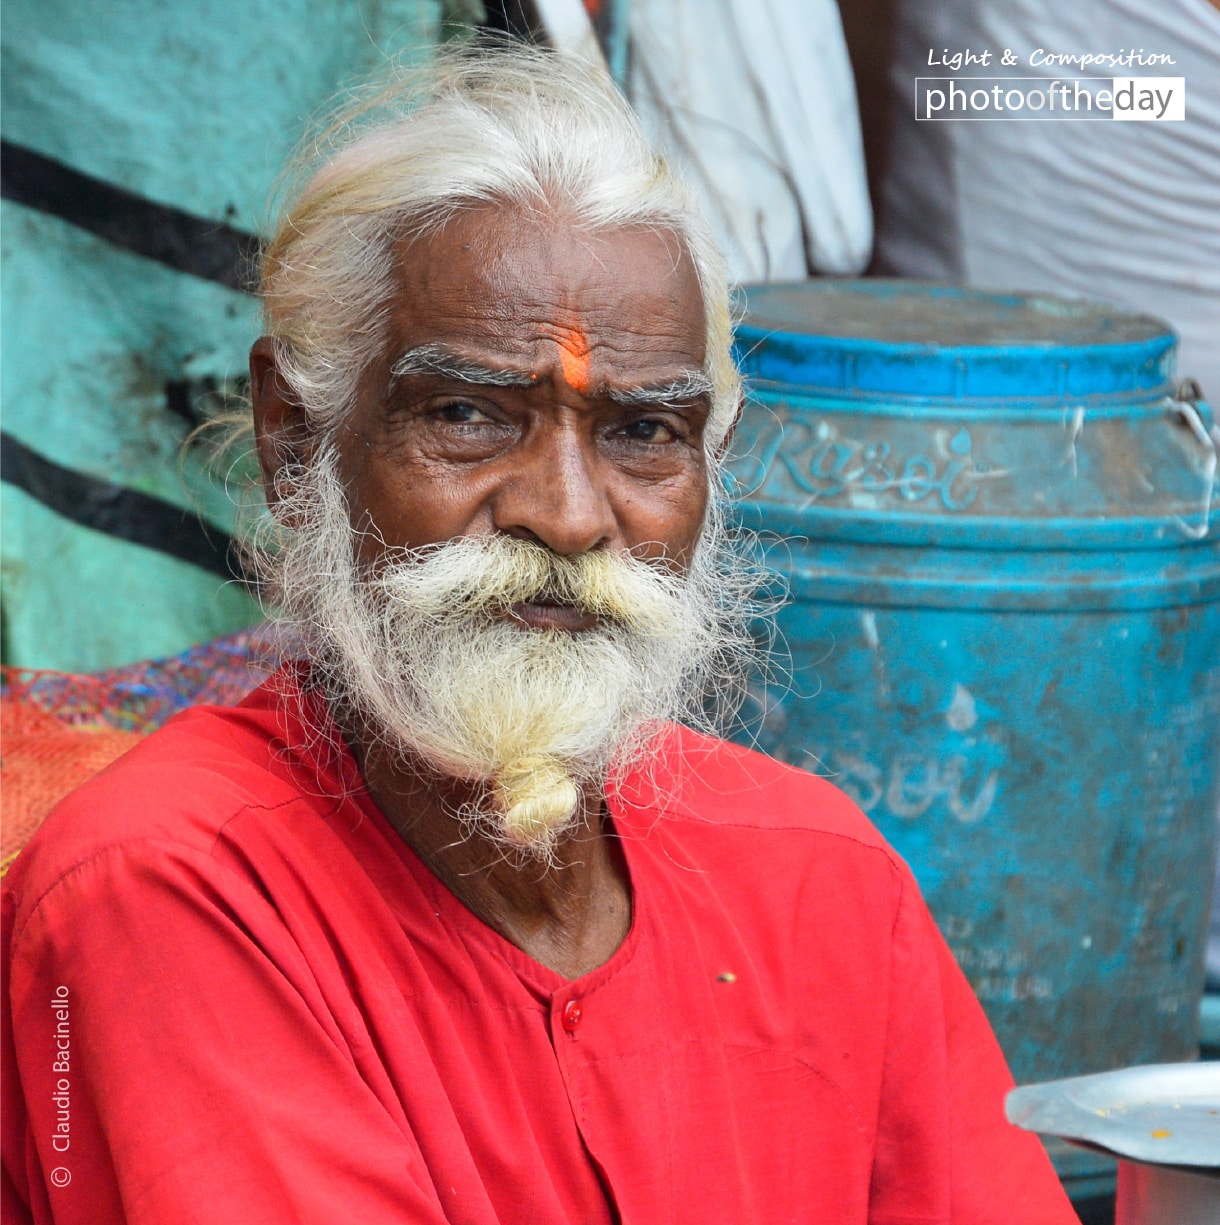 A Market Vendor in Kolkata, by Claudio Bacinello